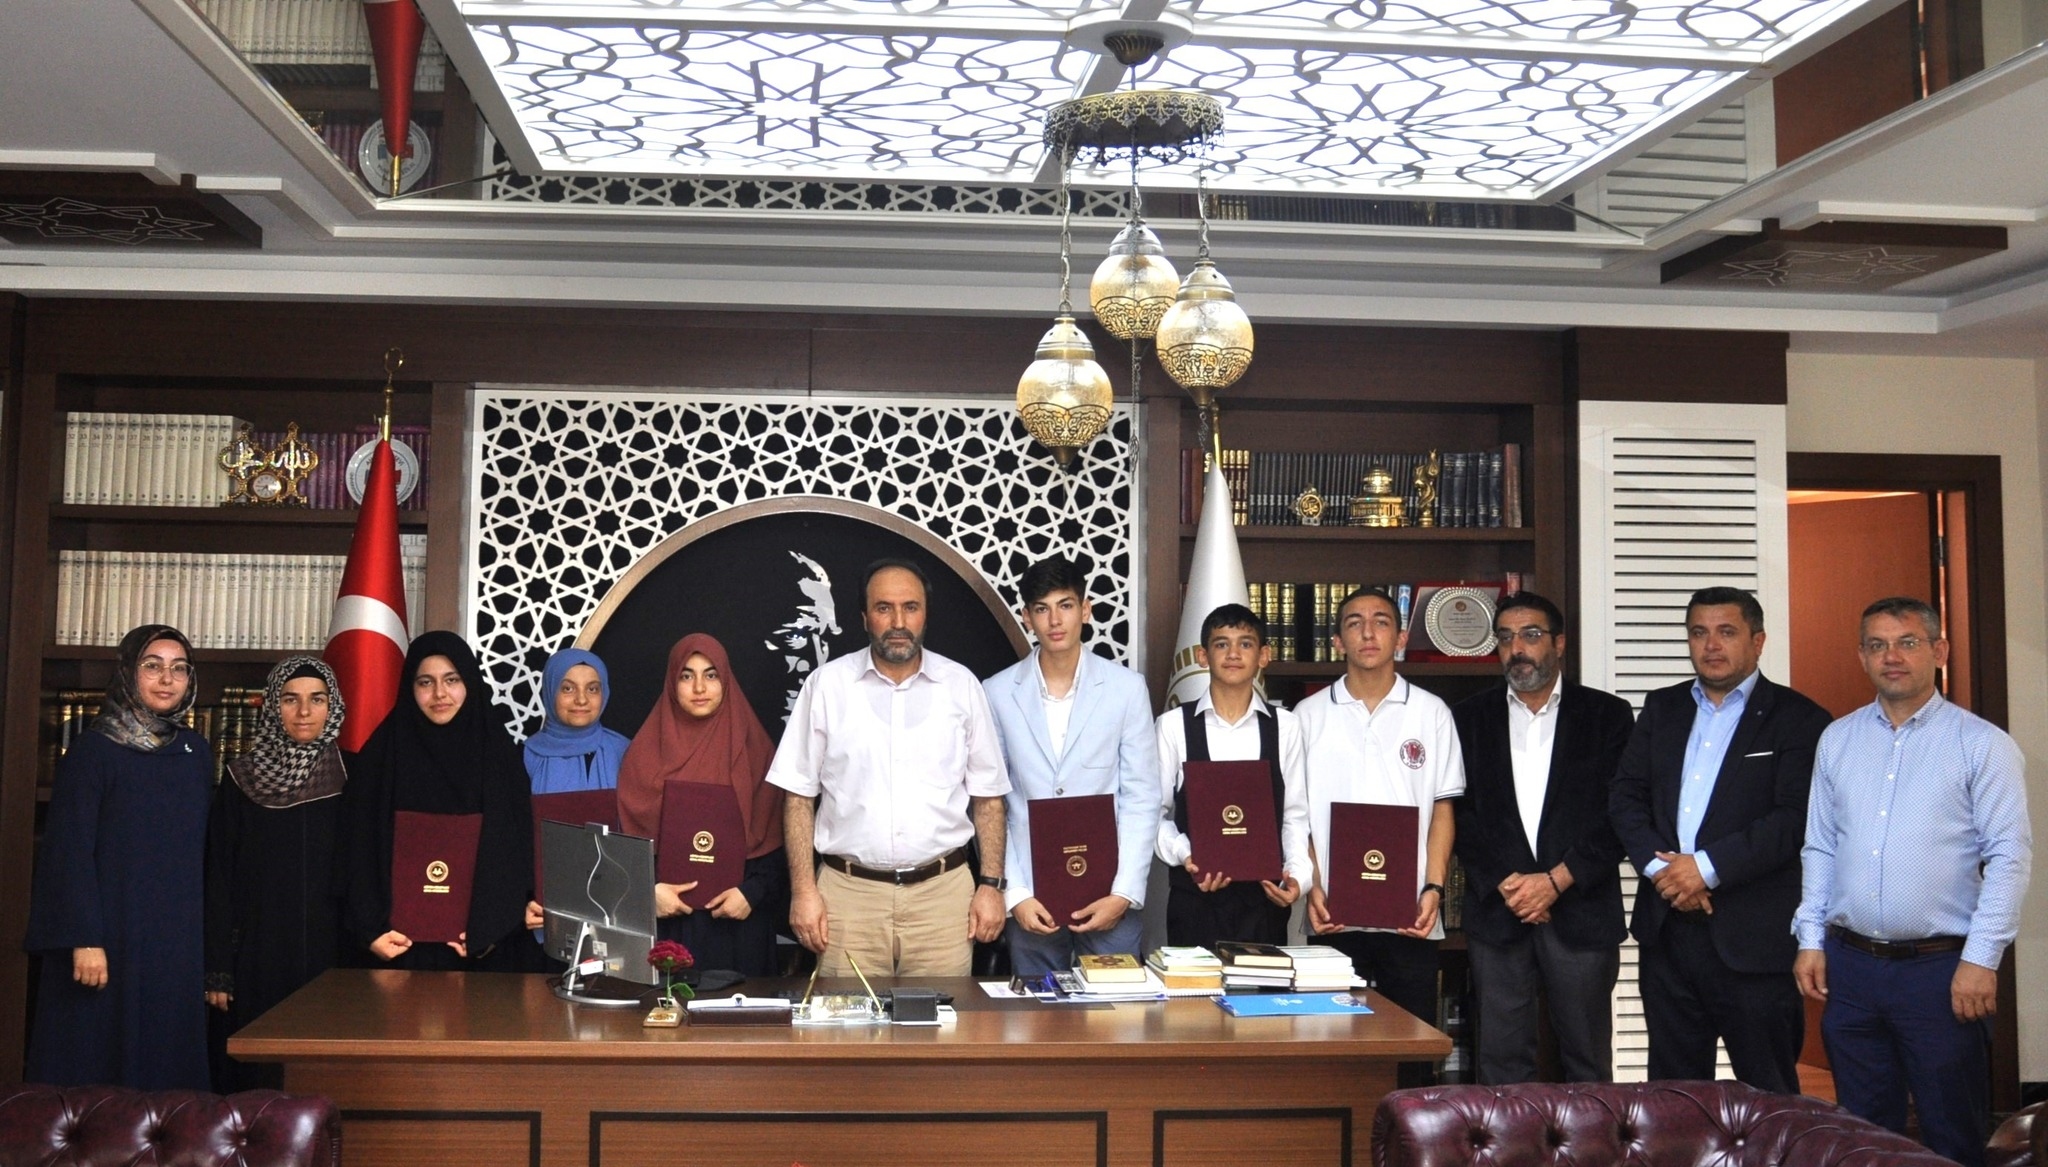 يتم الإعلان عن مواعيد امتحانات حفظ القرآن الكريم في تركيا من قبل رئاسة الشؤون الدينية التركية